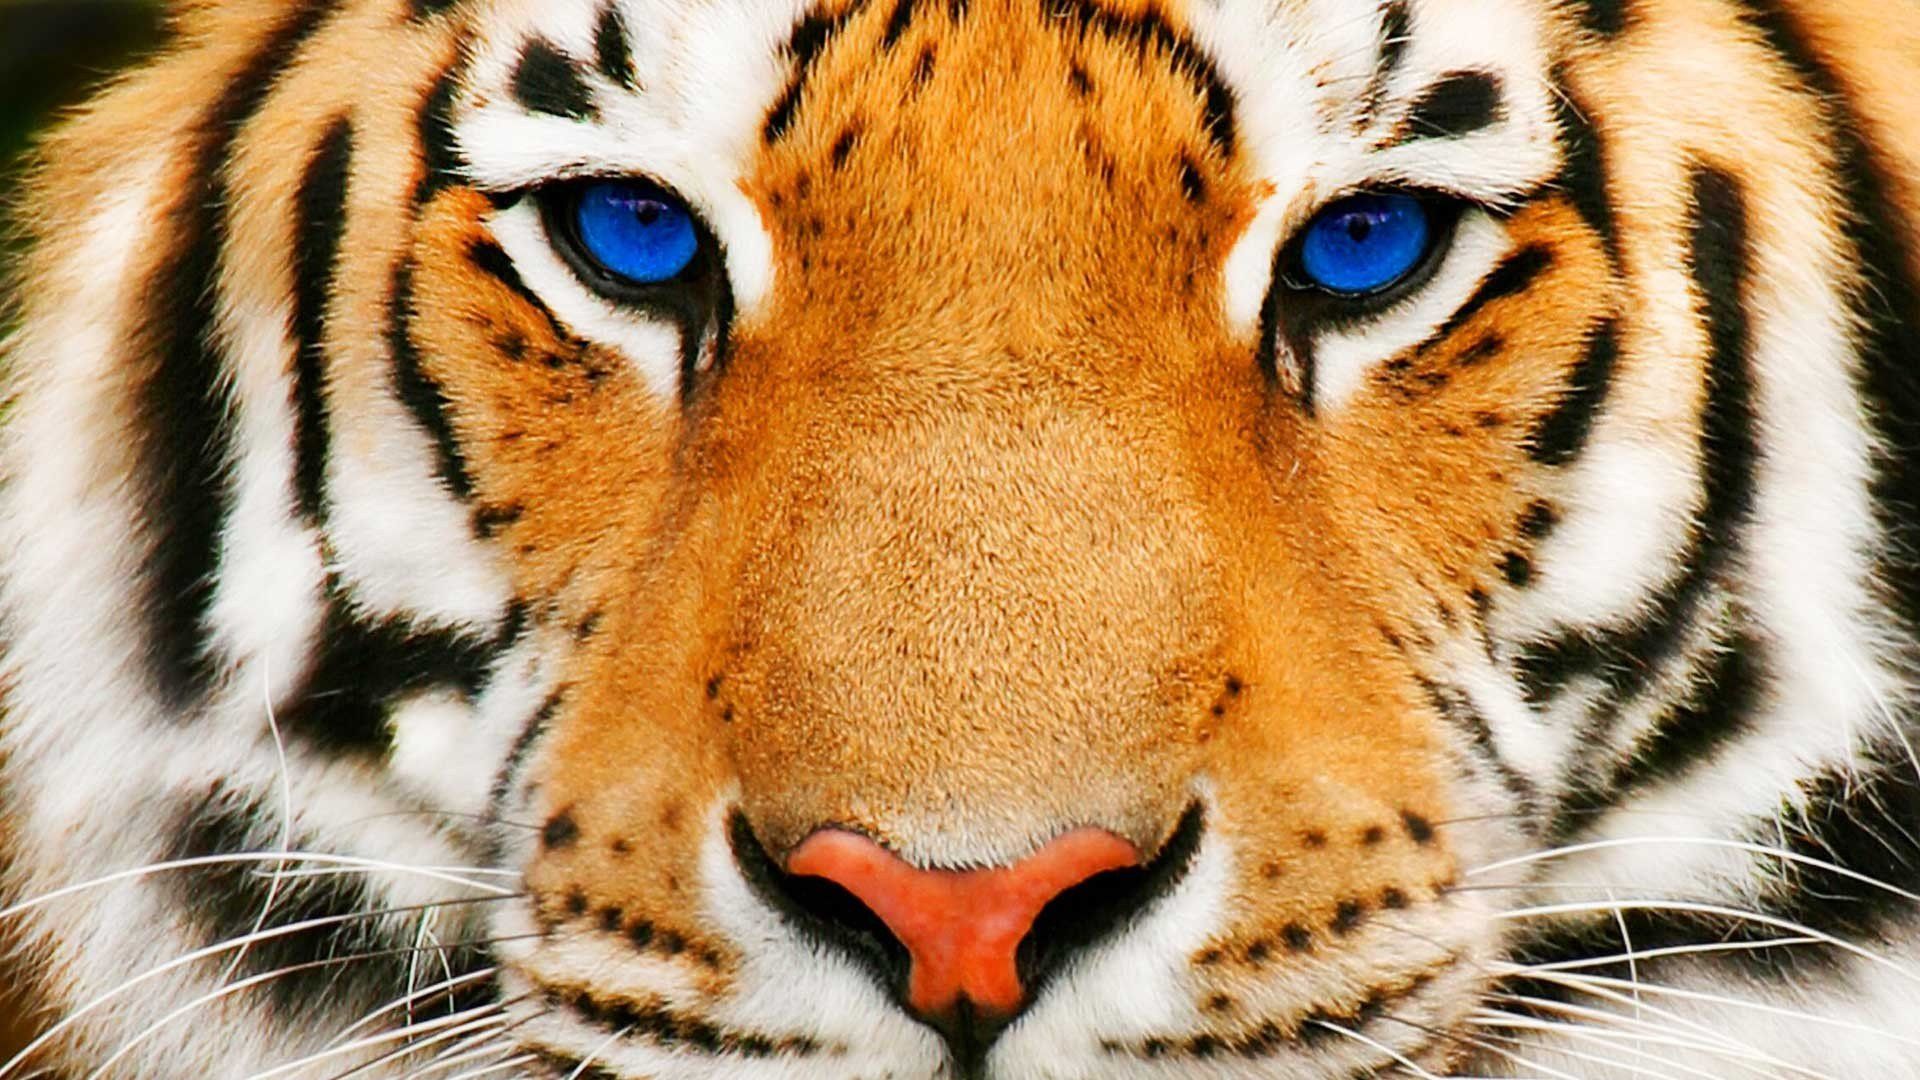 Tiger Face HD Wallpaper Desktop Background For